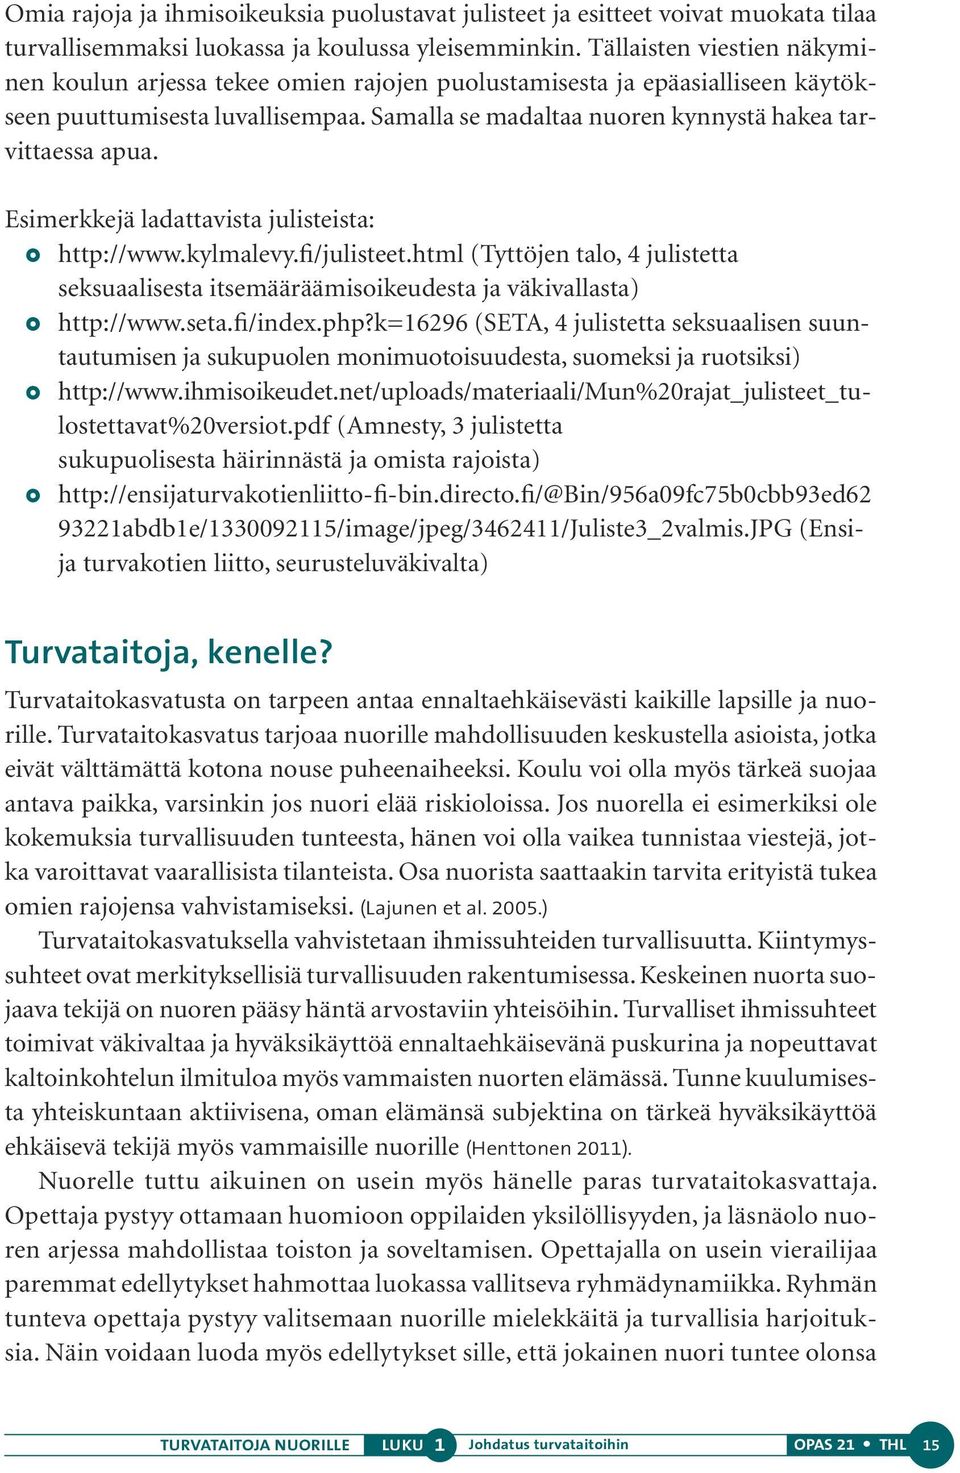 Esimerkkejä ladattavista julisteista: http://www.kylmalevy.fi/julisteet.html (Tyttöjen talo, 4 julistetta seksuaalisesta itsemääräämisoikeudesta ja väkivallasta) http://www.seta.fi/index.php?